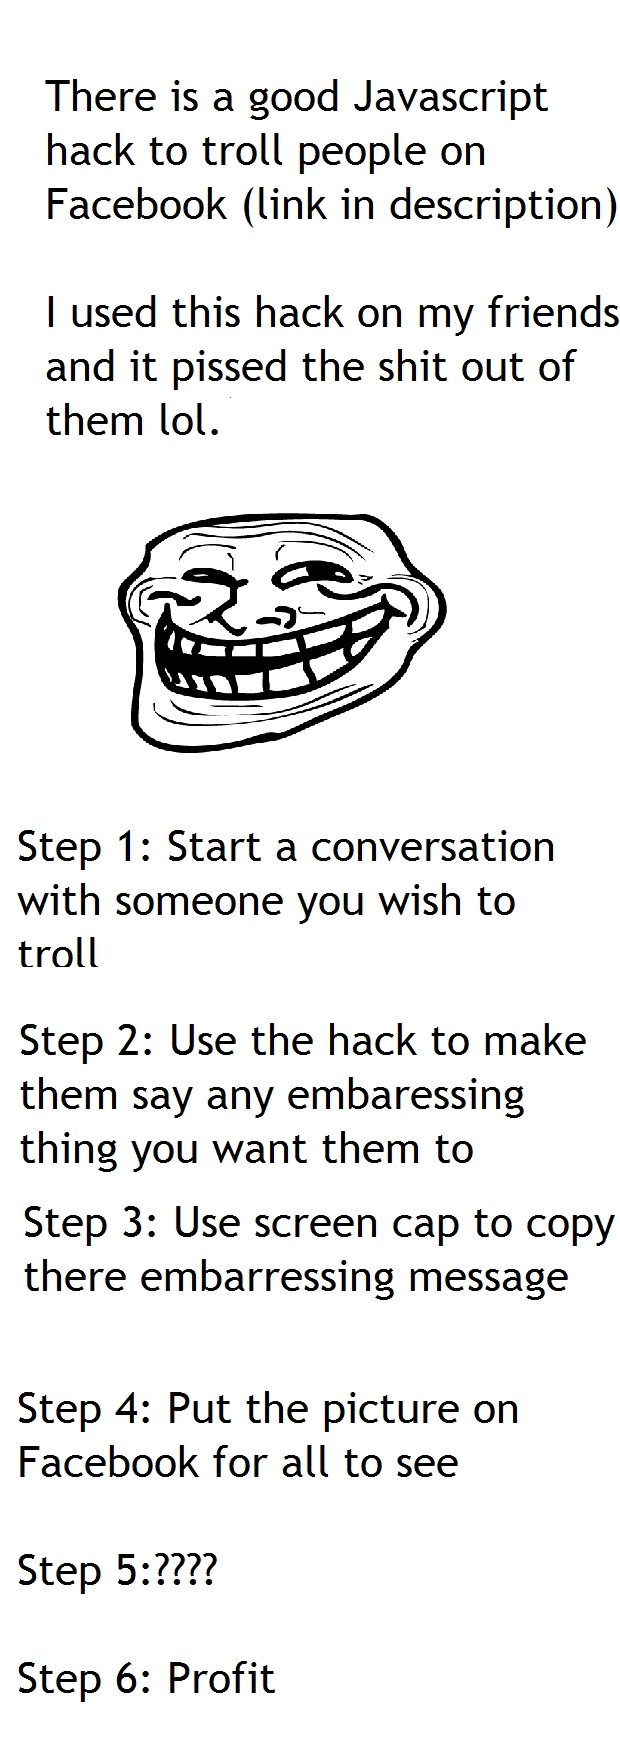 Cool Java Script Hack For Trolls - roblox troll scripts 2020